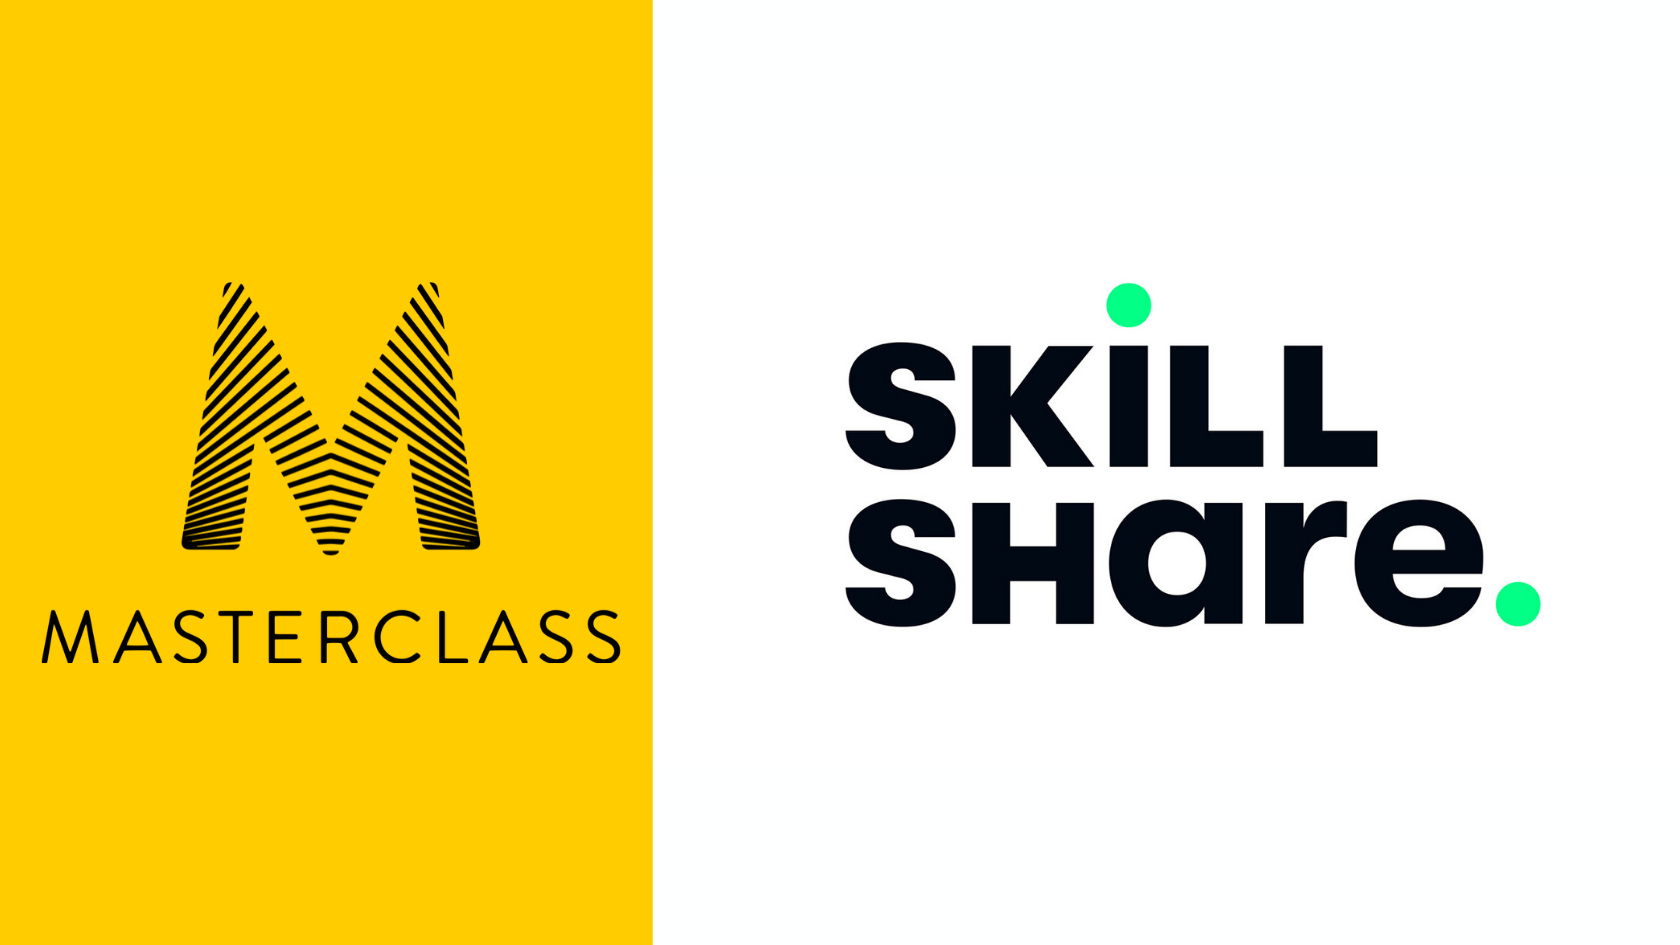 masterclass vs skillshare